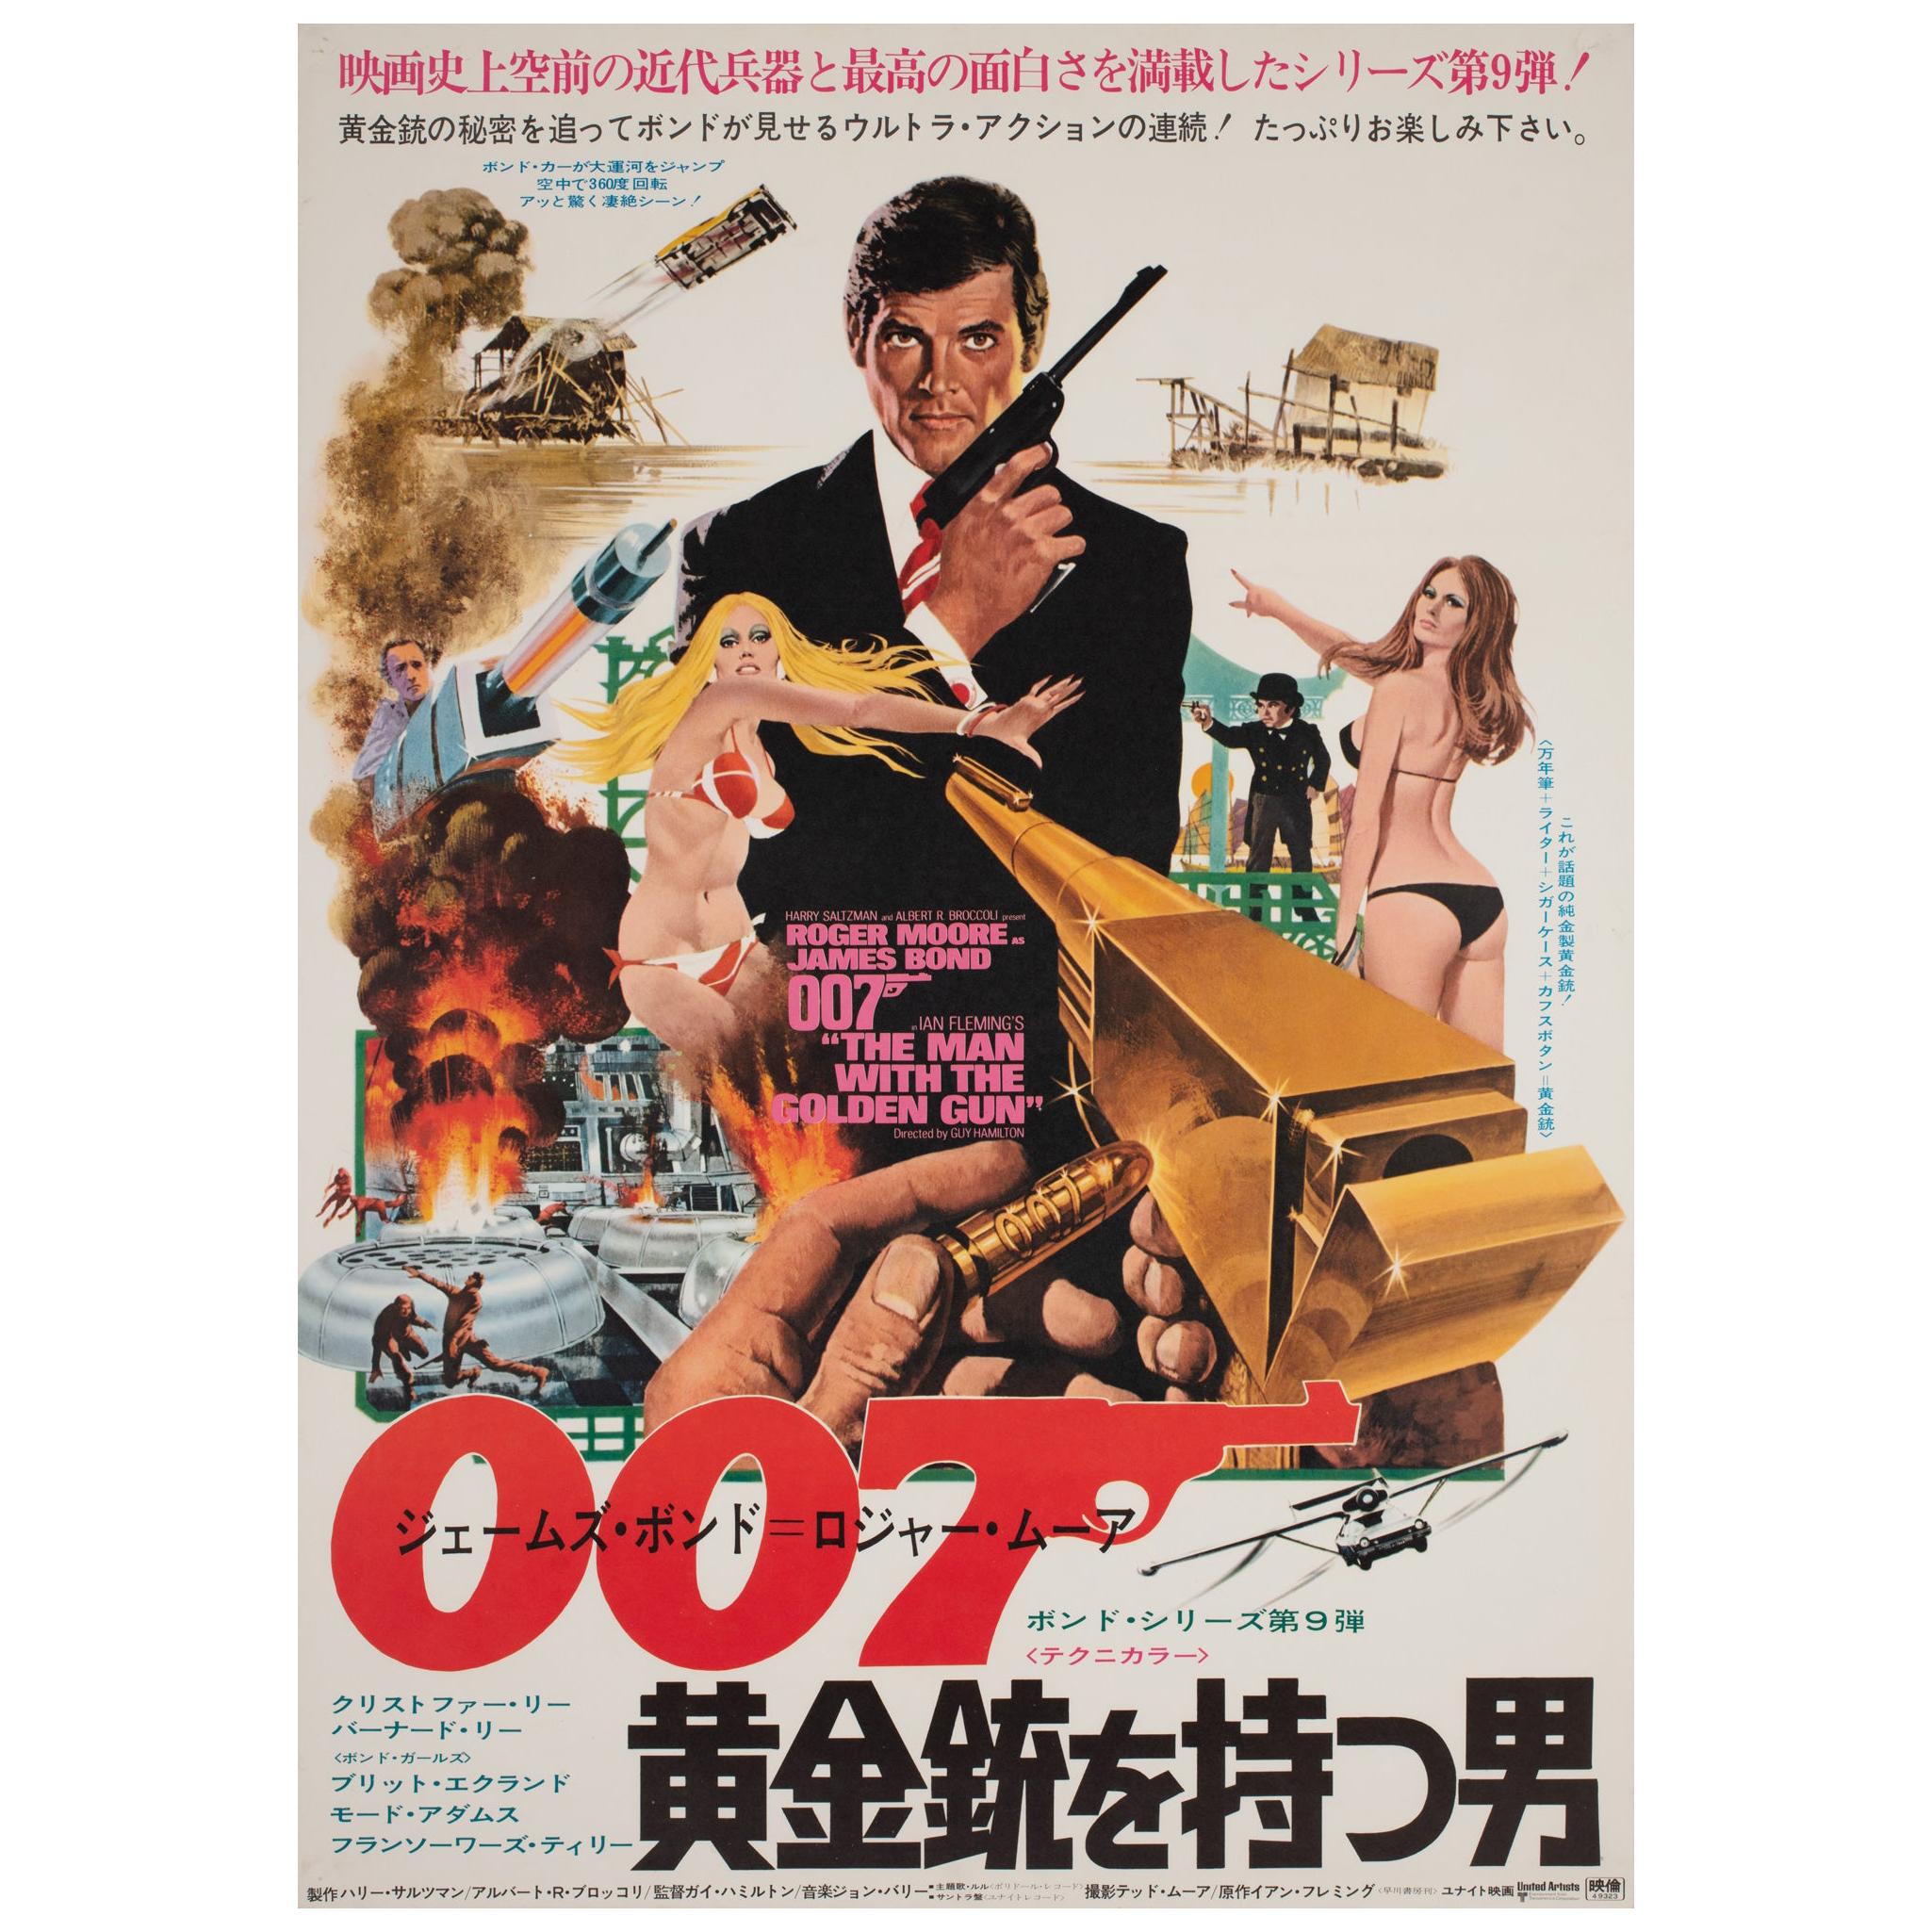 Affiche japonaise du film « The Man with the Golden Gun » (L'homme au pistolet d'or), 1973, McGinnis en vente